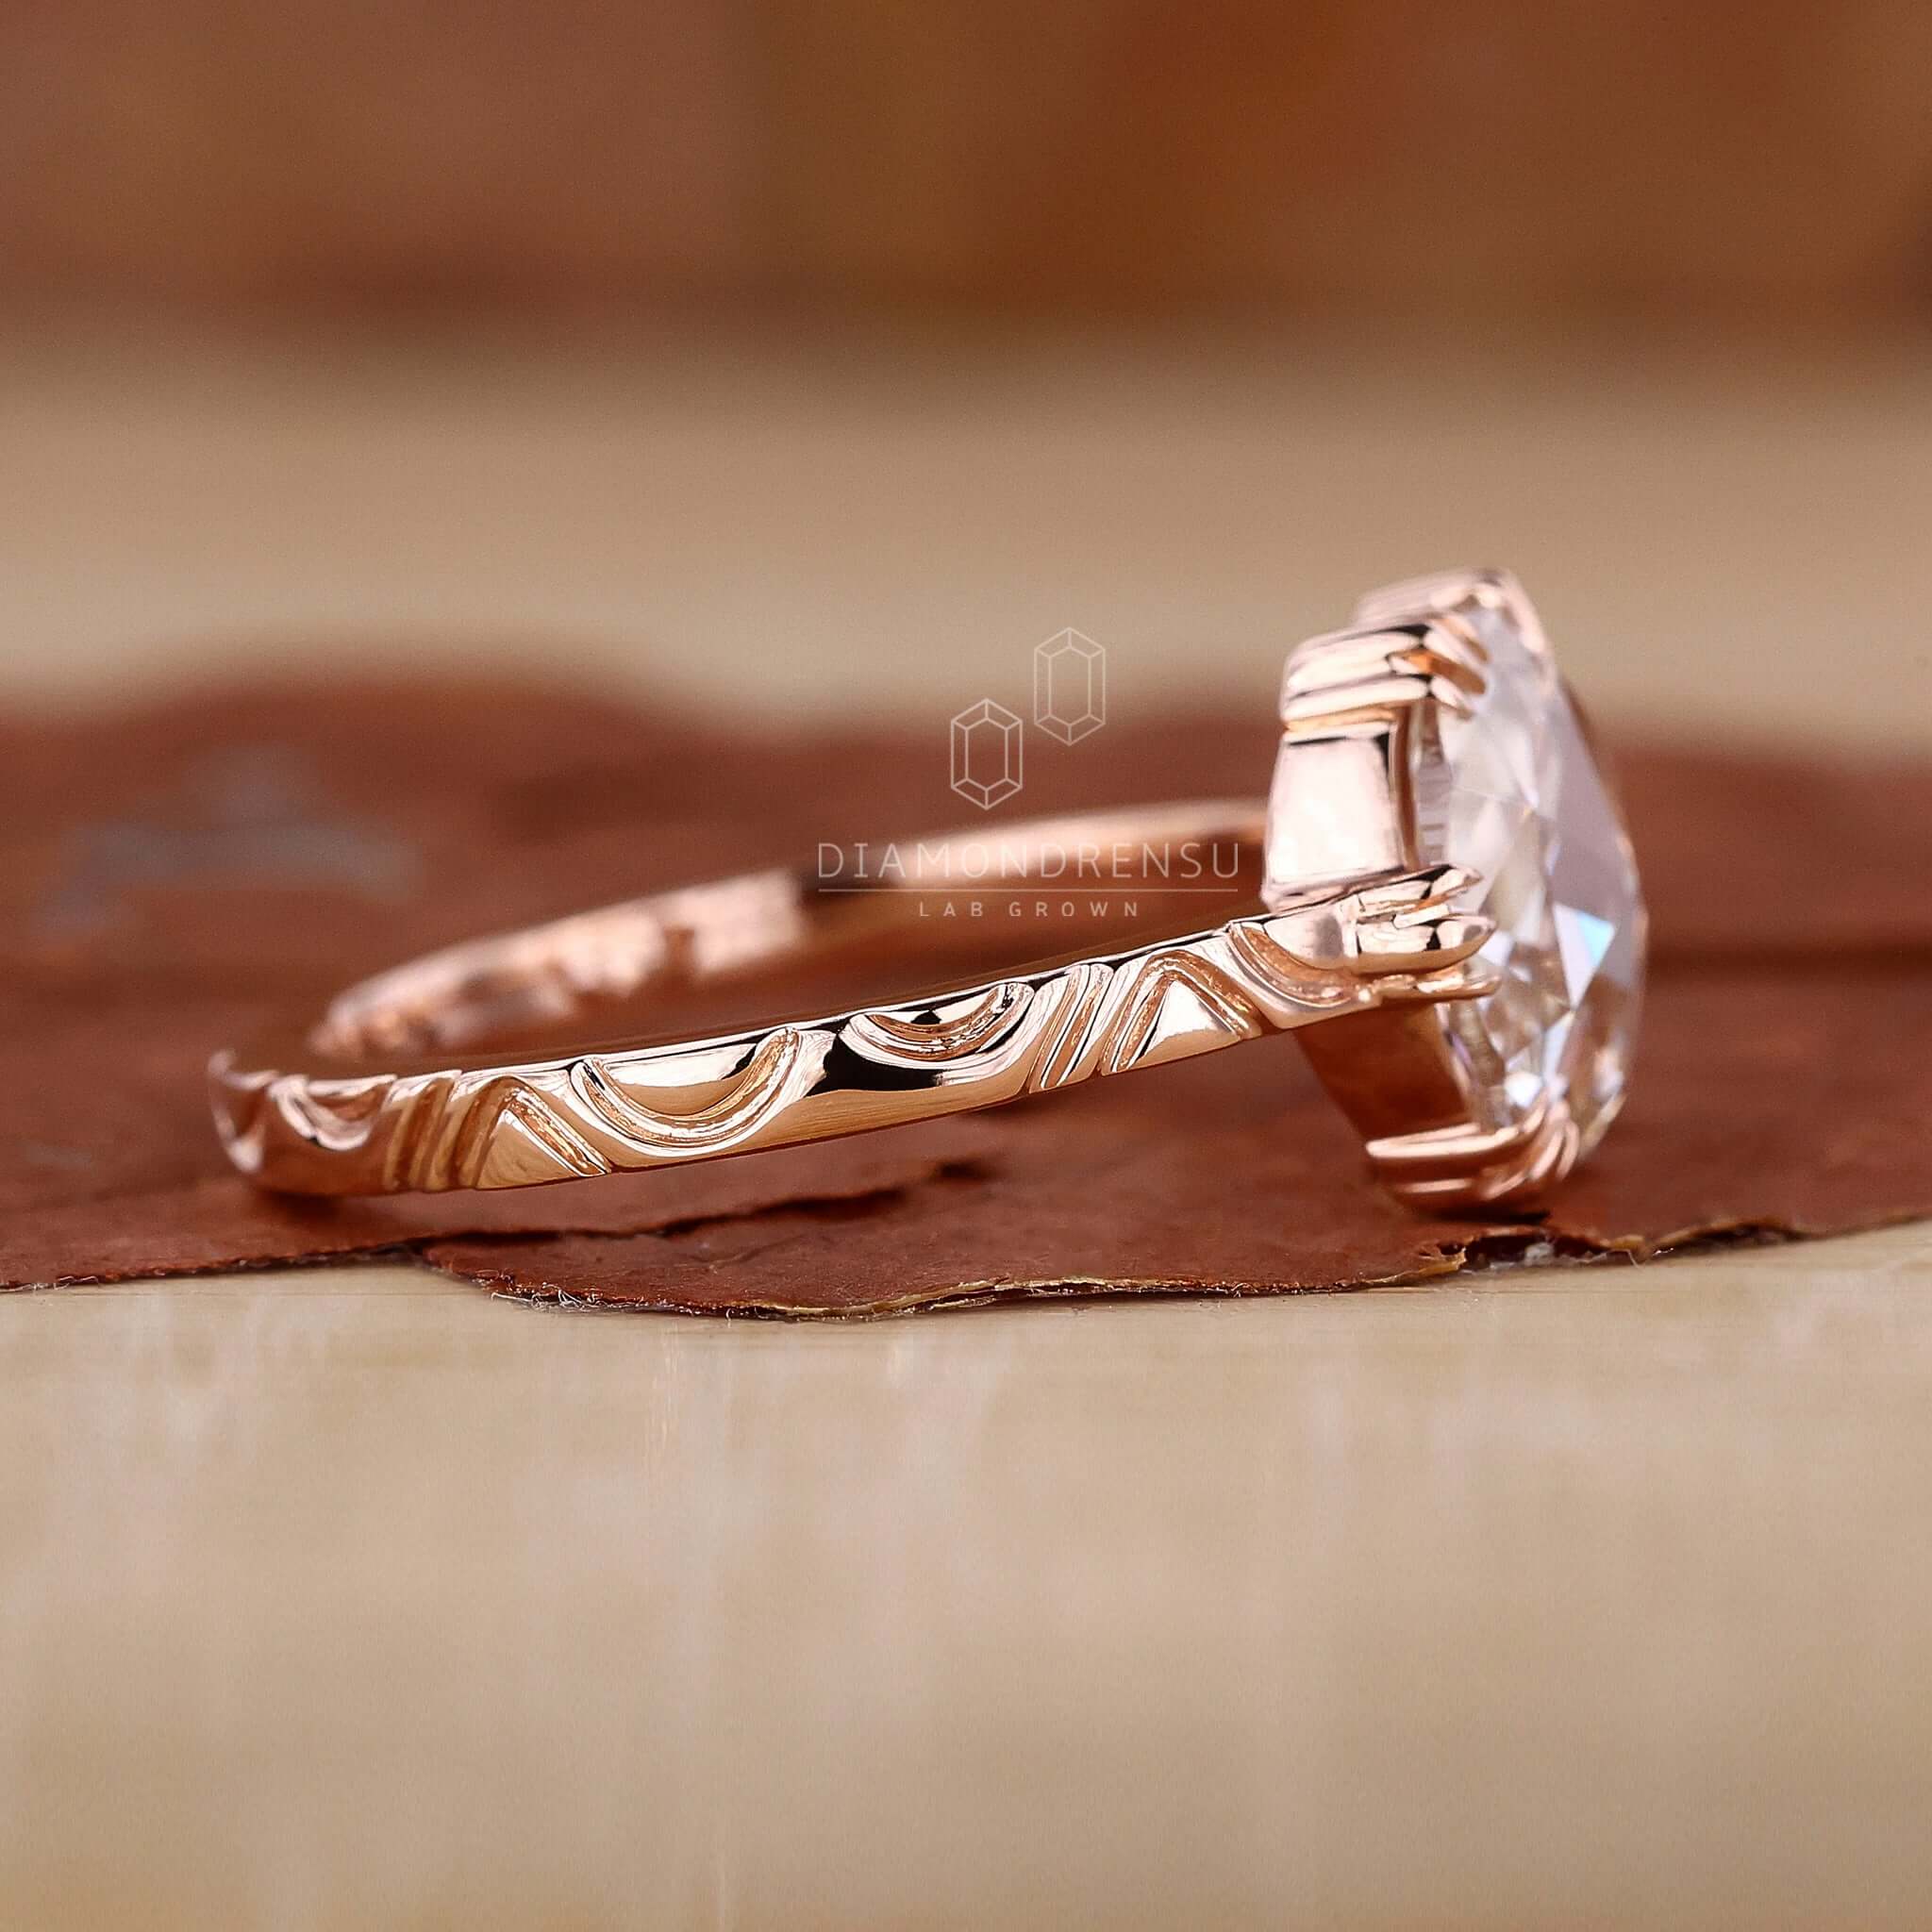 Vintage Rose Cut Engagement Ring - Diamondrensu